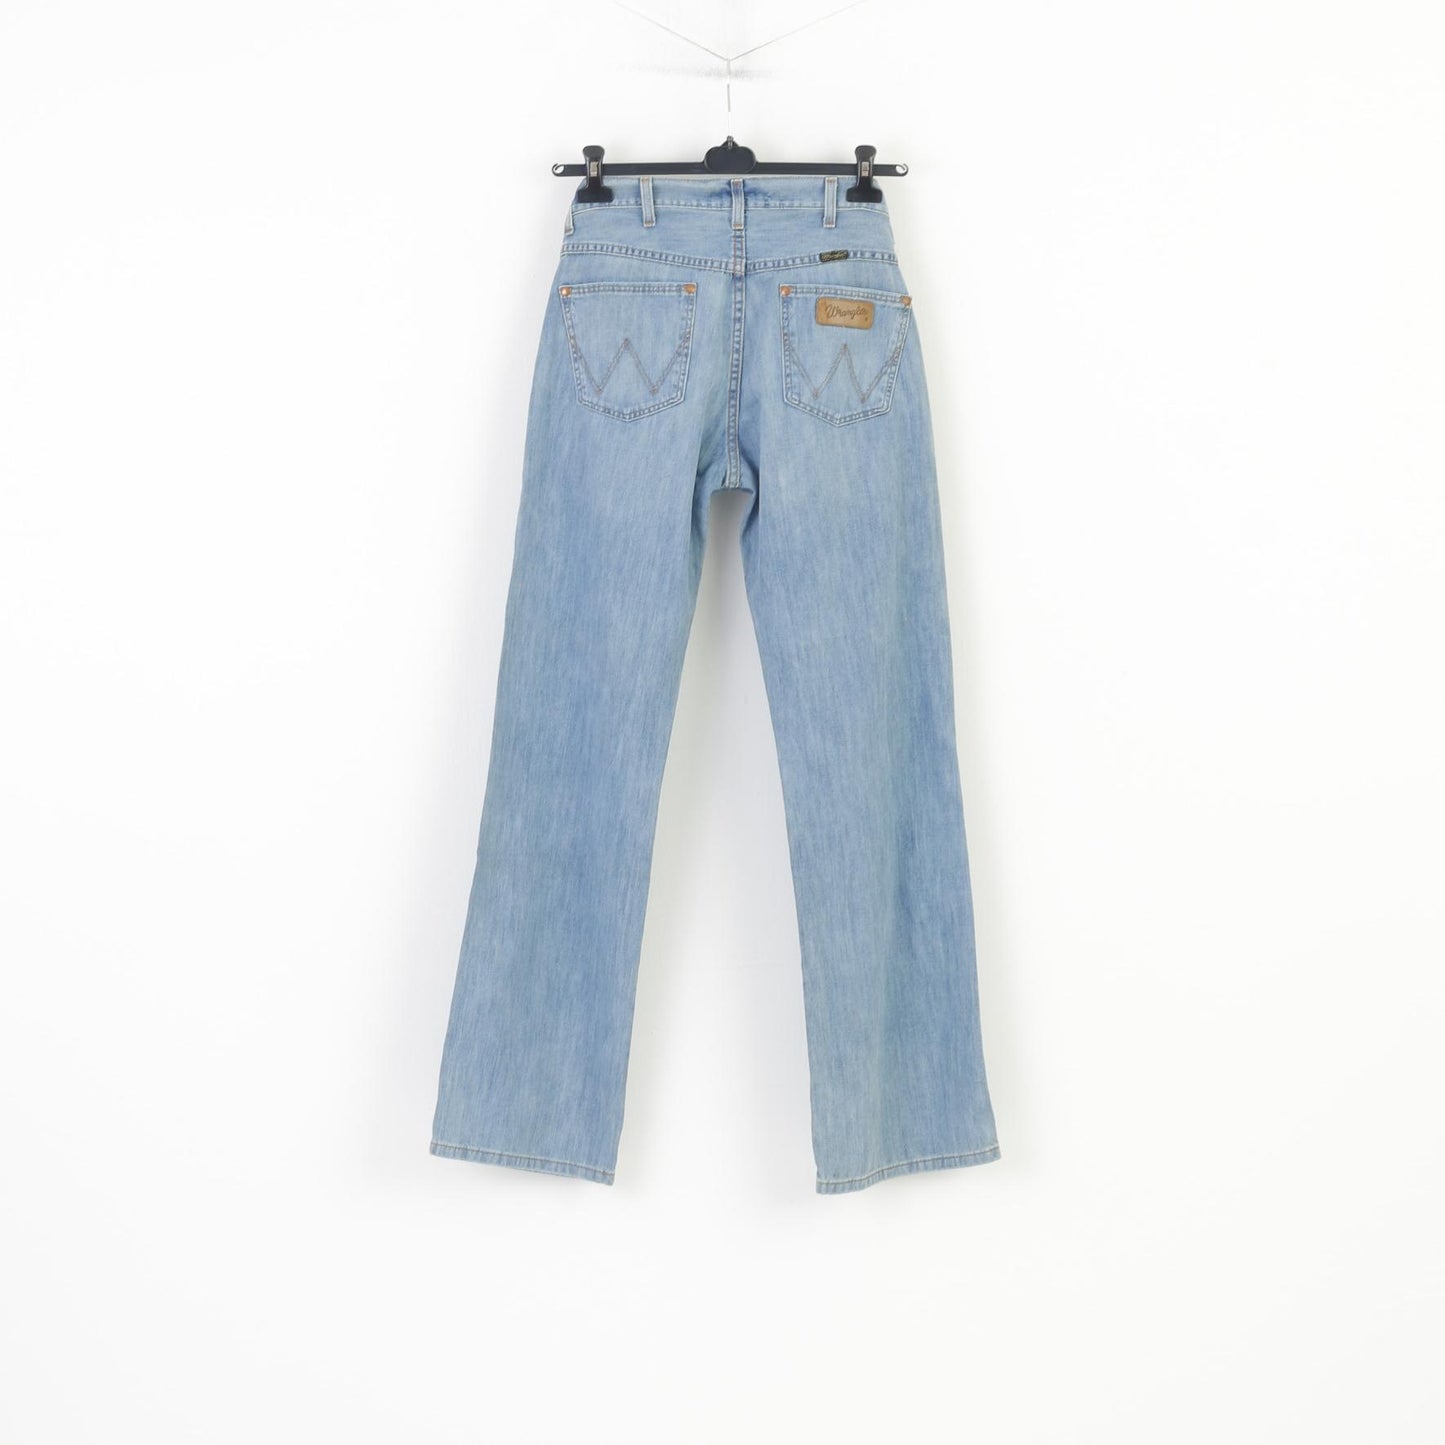 Wrangler Men 31 Trousers Denim Blue Jeans Cotton Vintage Pants